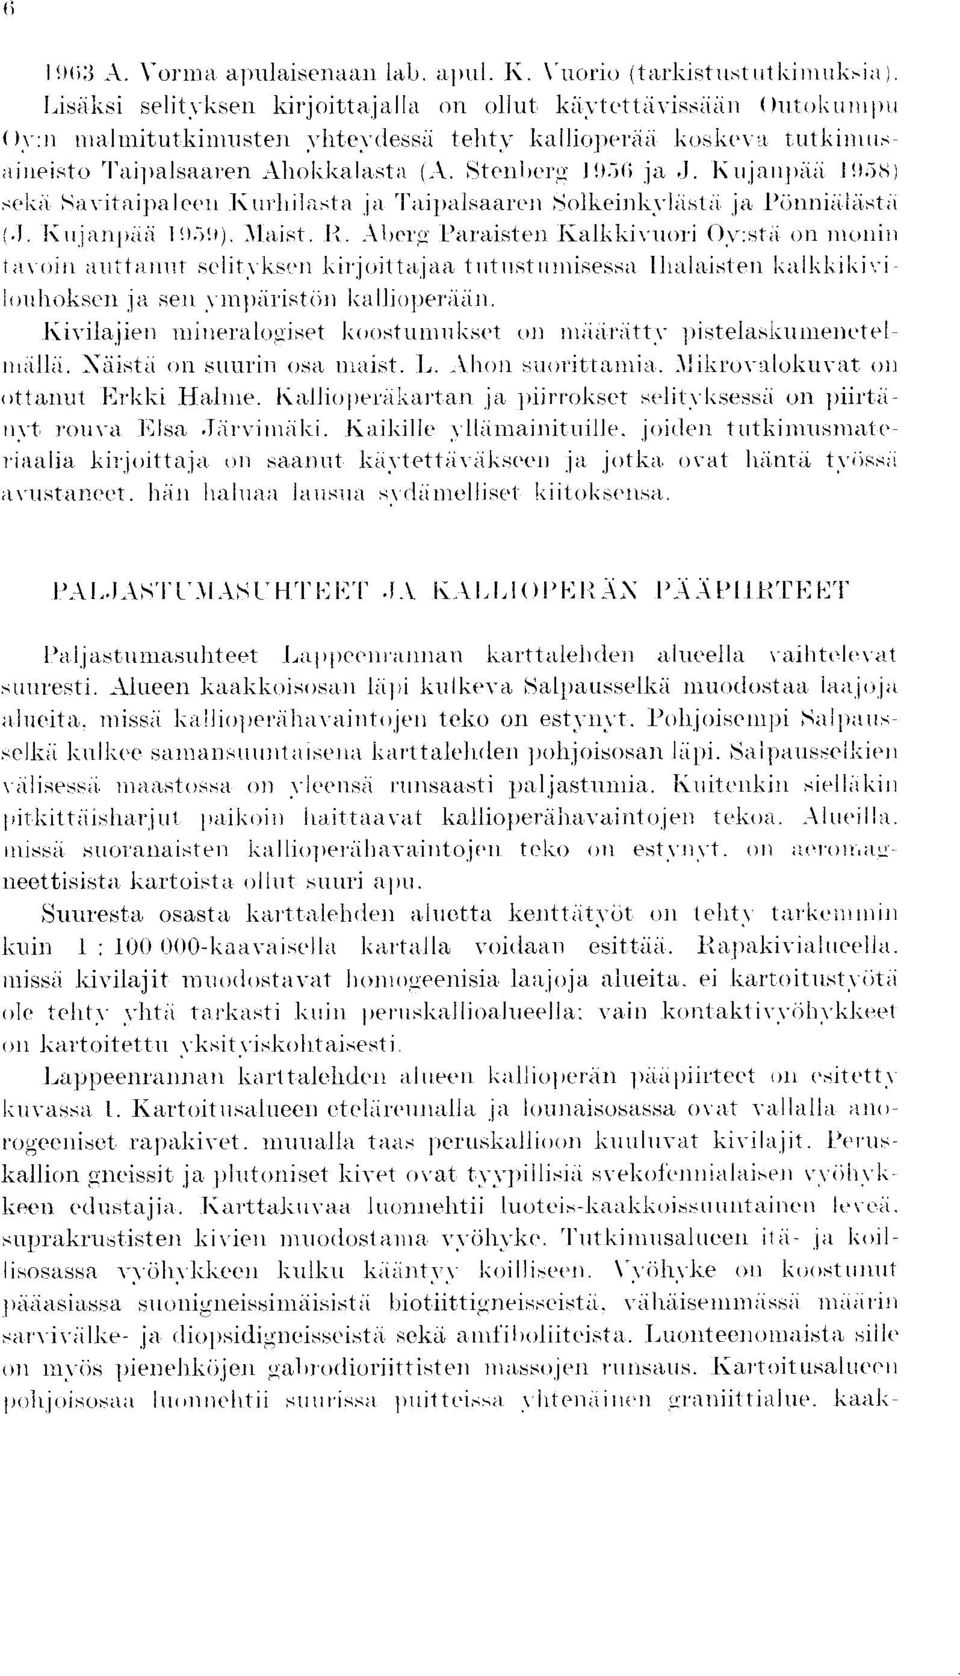 Stenherg 1956 ja J. Kujarnpaa 1955) sel h Kavitaipaleen Kuddlasta ja Taipalsaaren Solkeinkvliistii ja Ponniiilastii ;.1. I' n j Znltiiii 195n. Alaist. R.